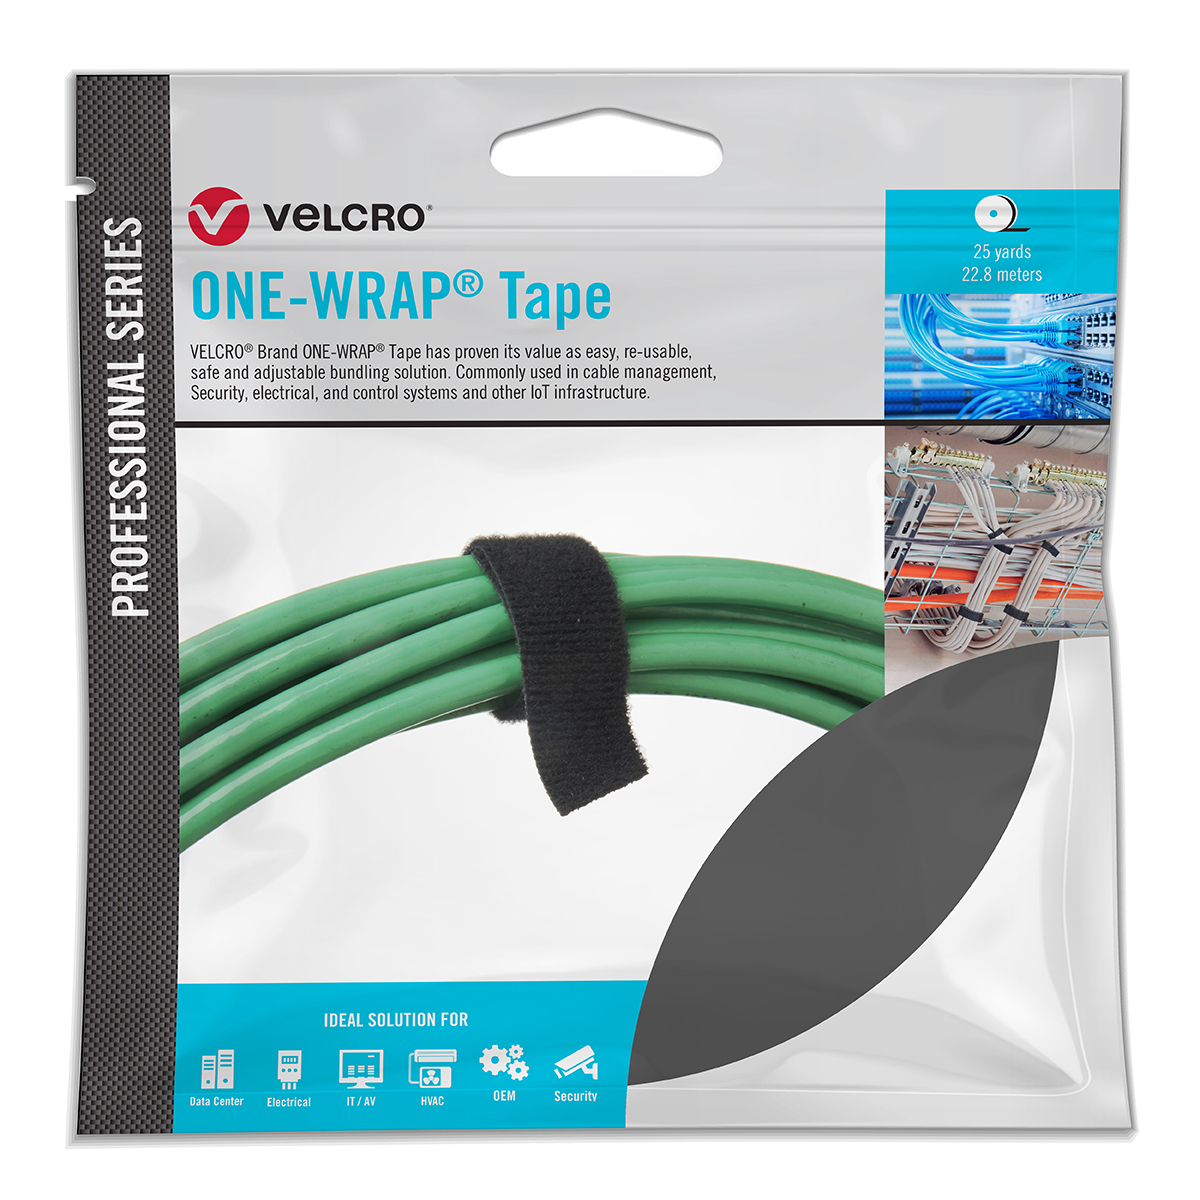 VELCRO® Brand Adhesive Tape 4 x 25 yards